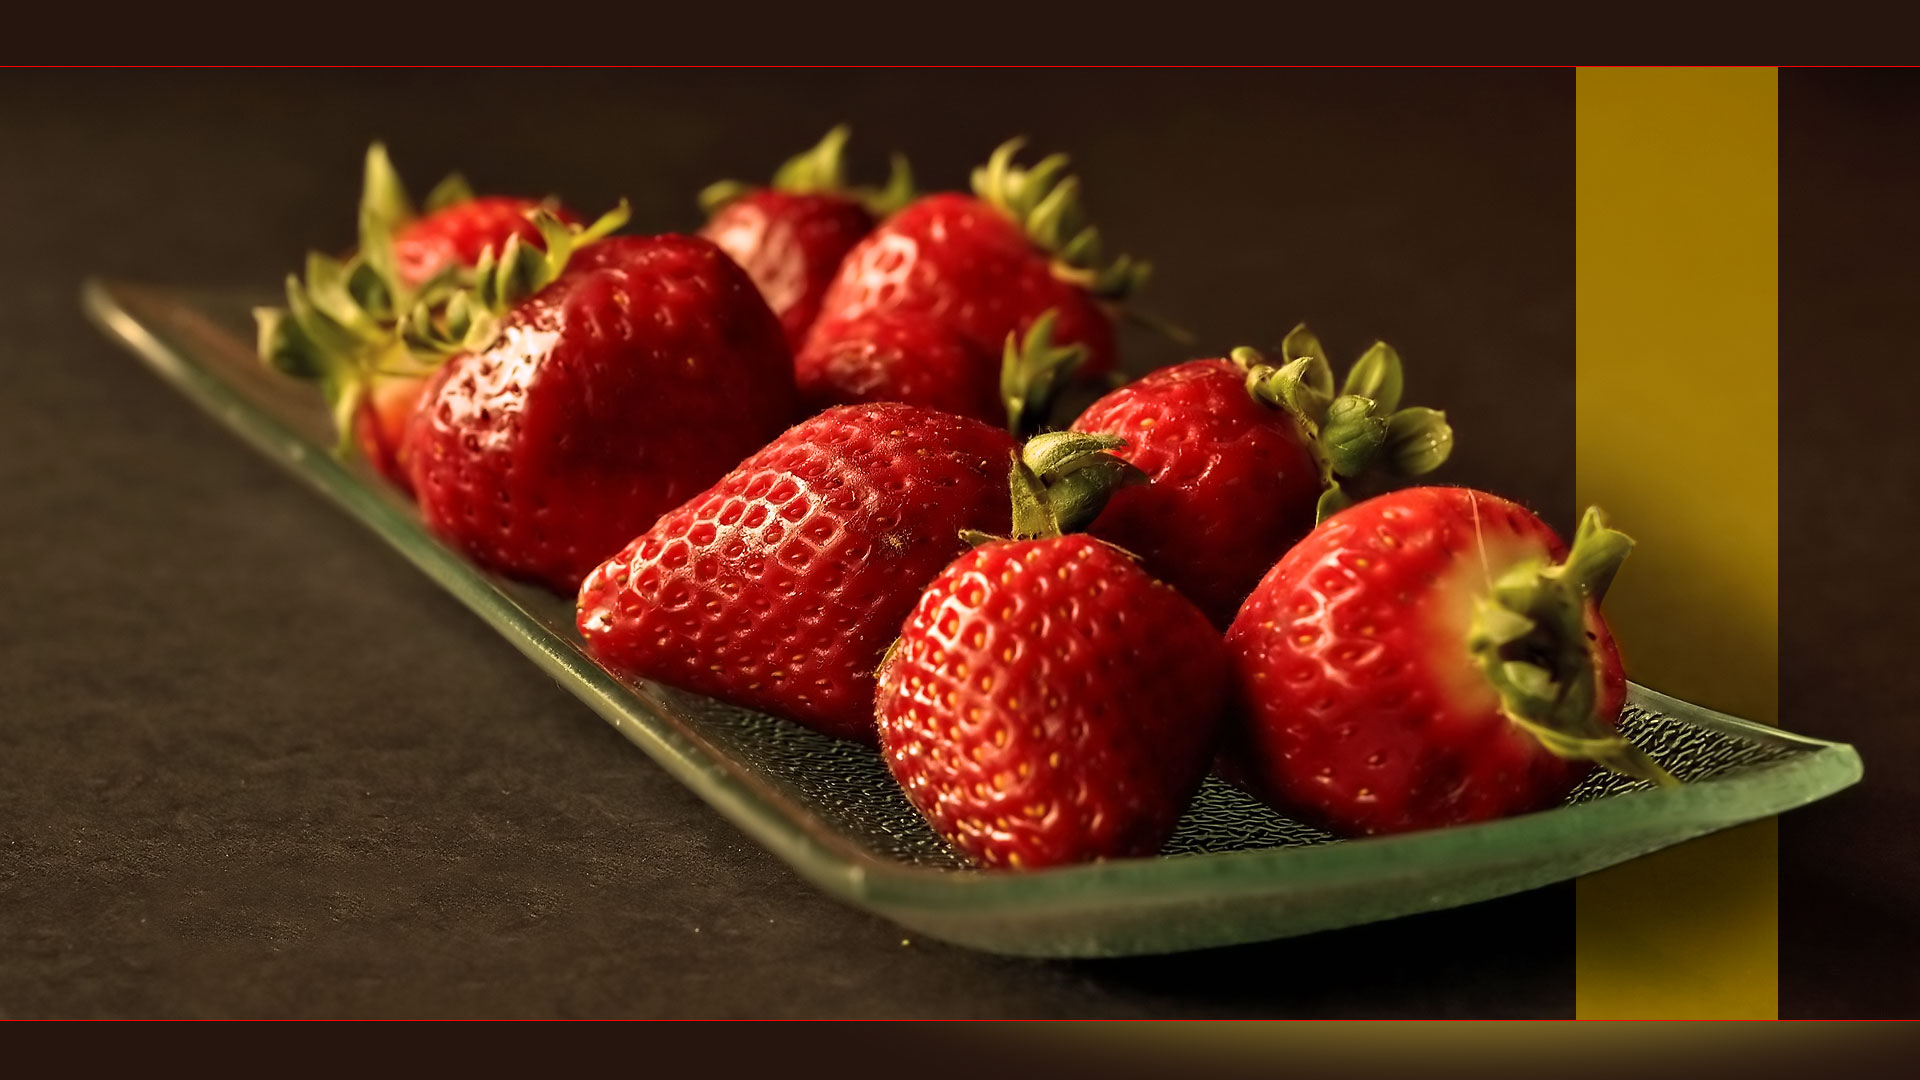 La fraise Gariguette, issue du croisement des variétés Belrubi et Favette